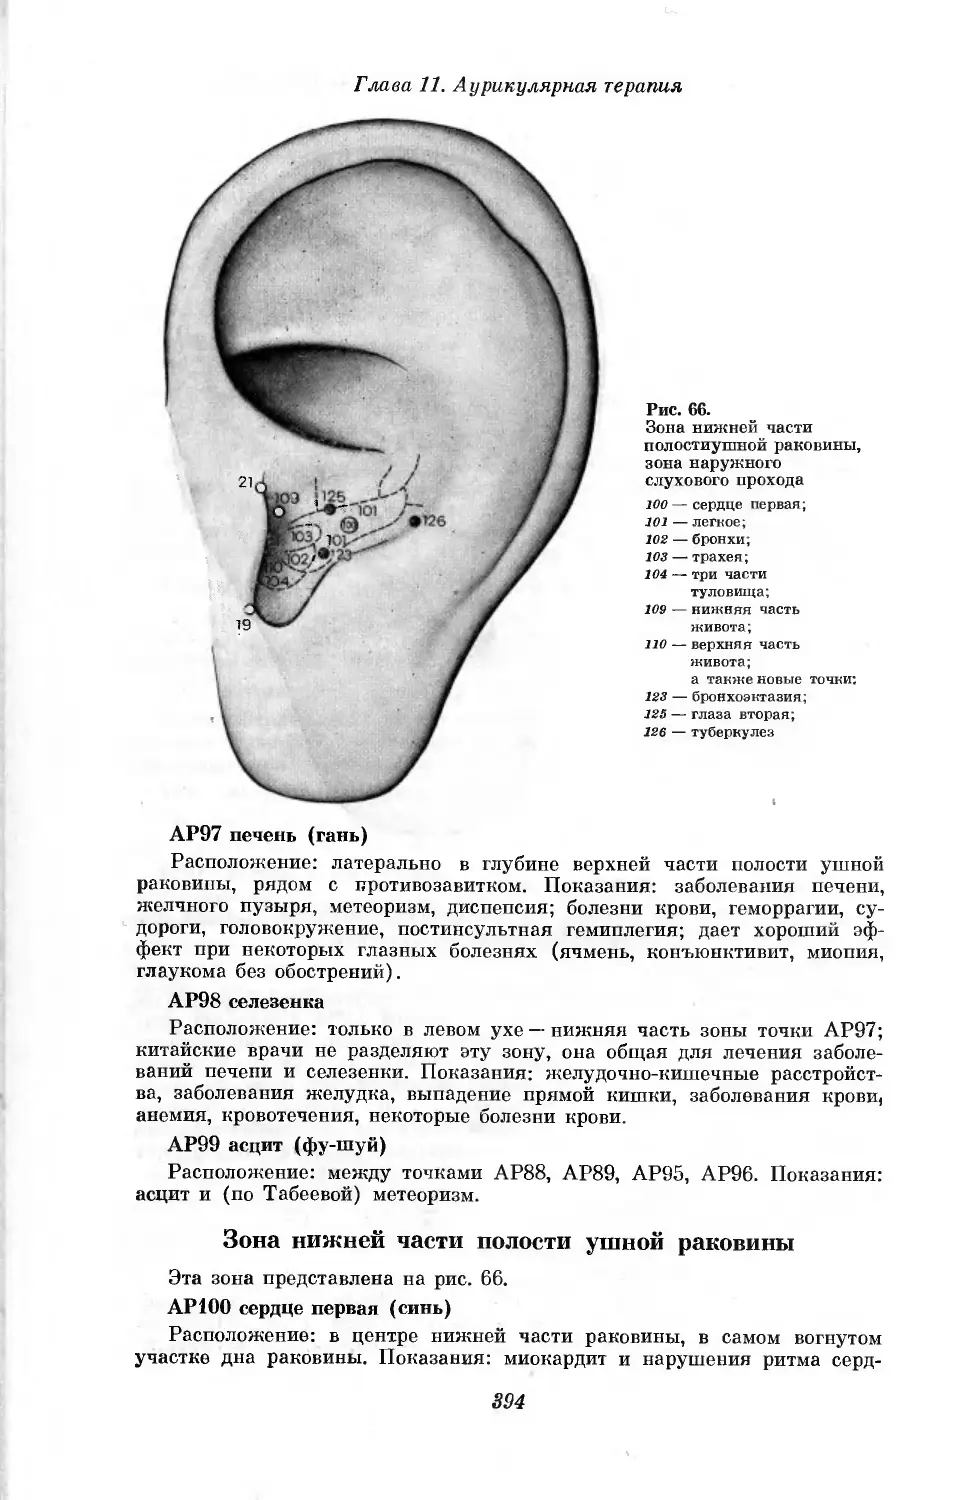 Зона нижней части полости ушной раковины